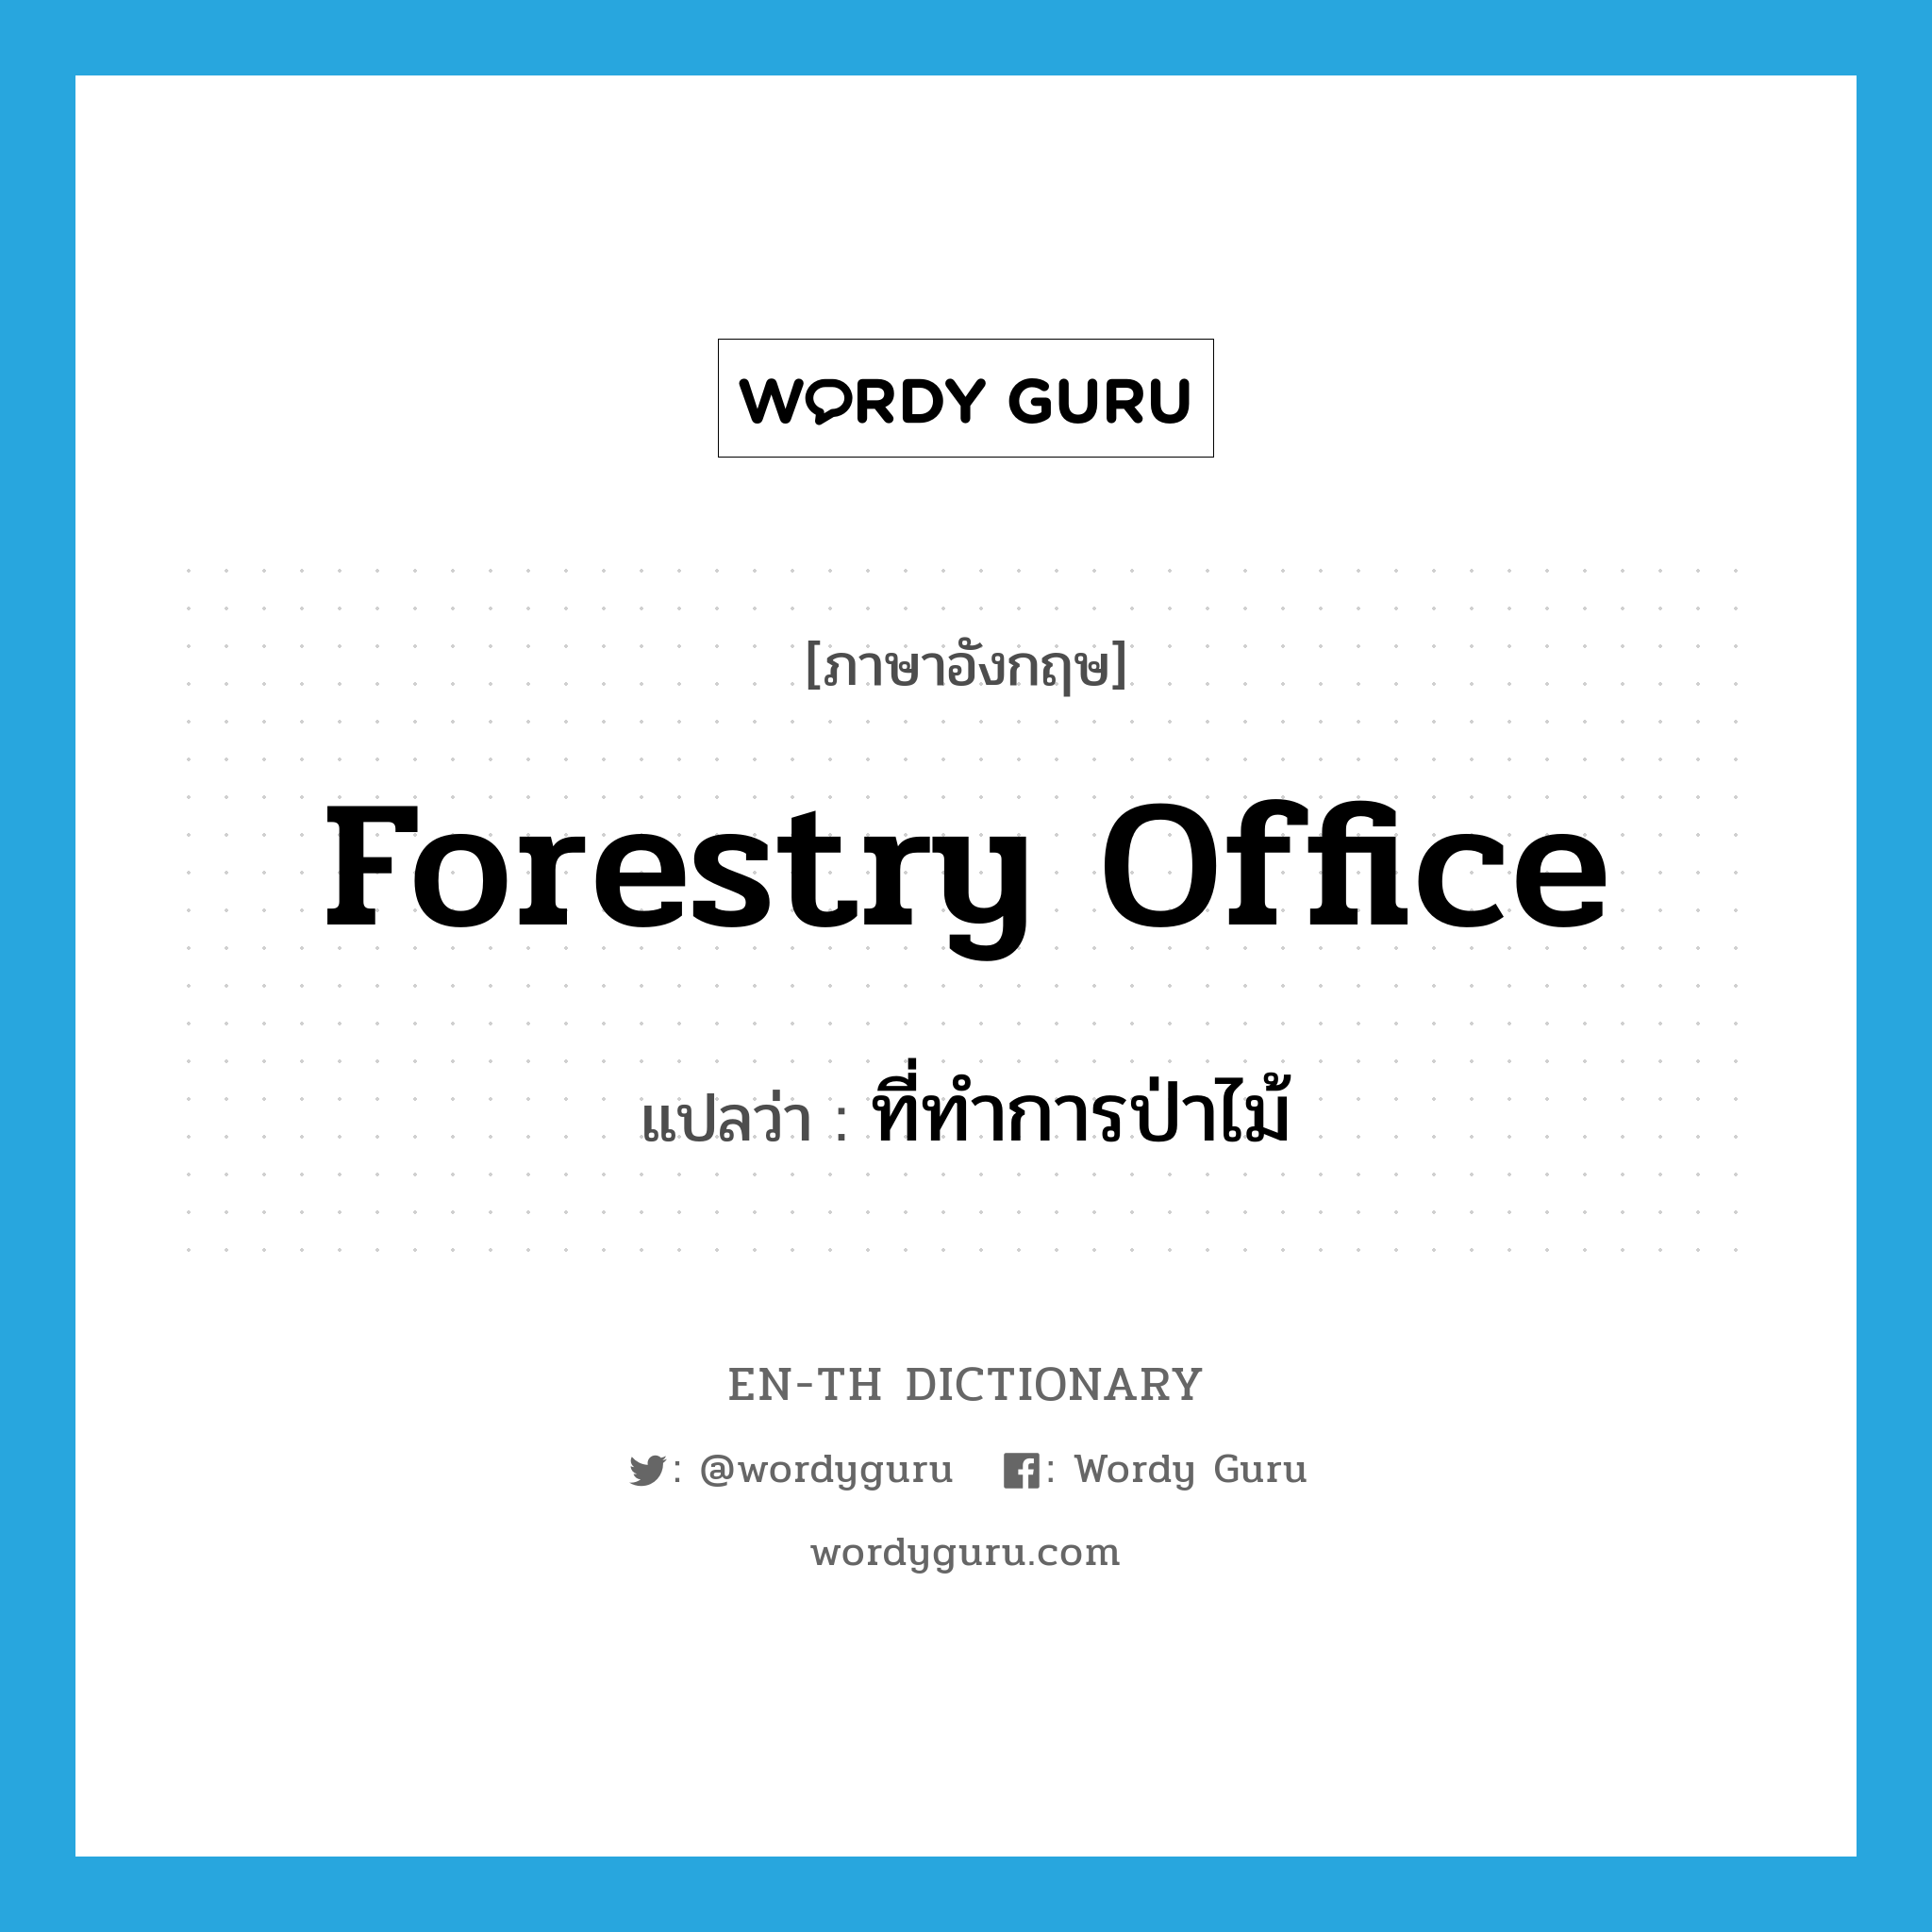 forestry office แปลว่า?, คำศัพท์ภาษาอังกฤษ forestry office แปลว่า ที่ทำการป่าไม้ ประเภท N หมวด N